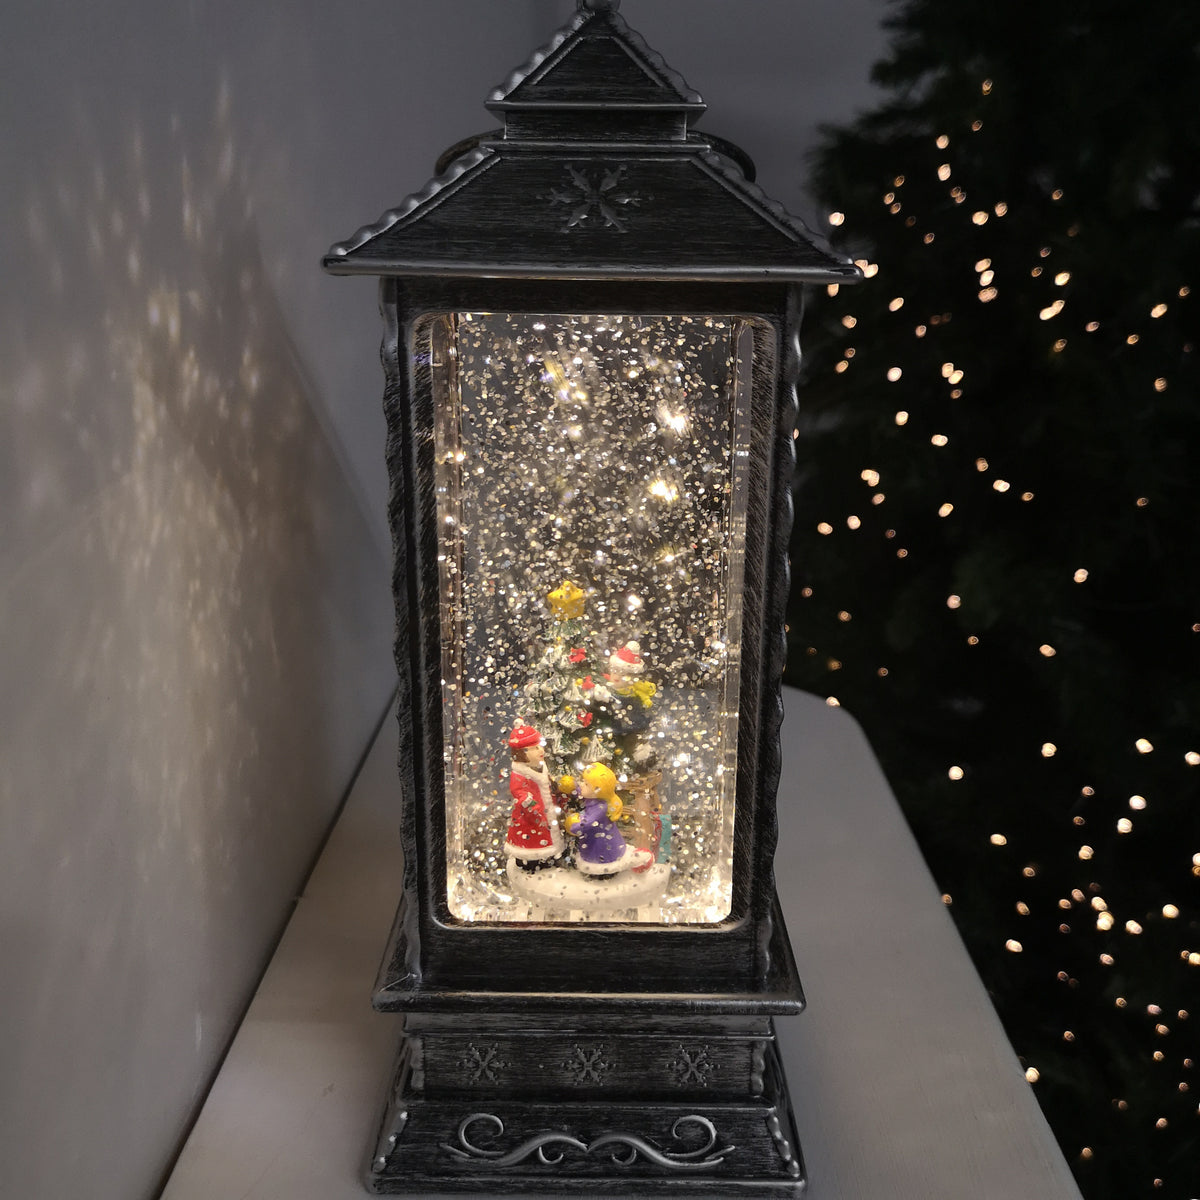 27cm Glitter Water Spinner Lantern - Pick Choir or Tree. Warm White LED